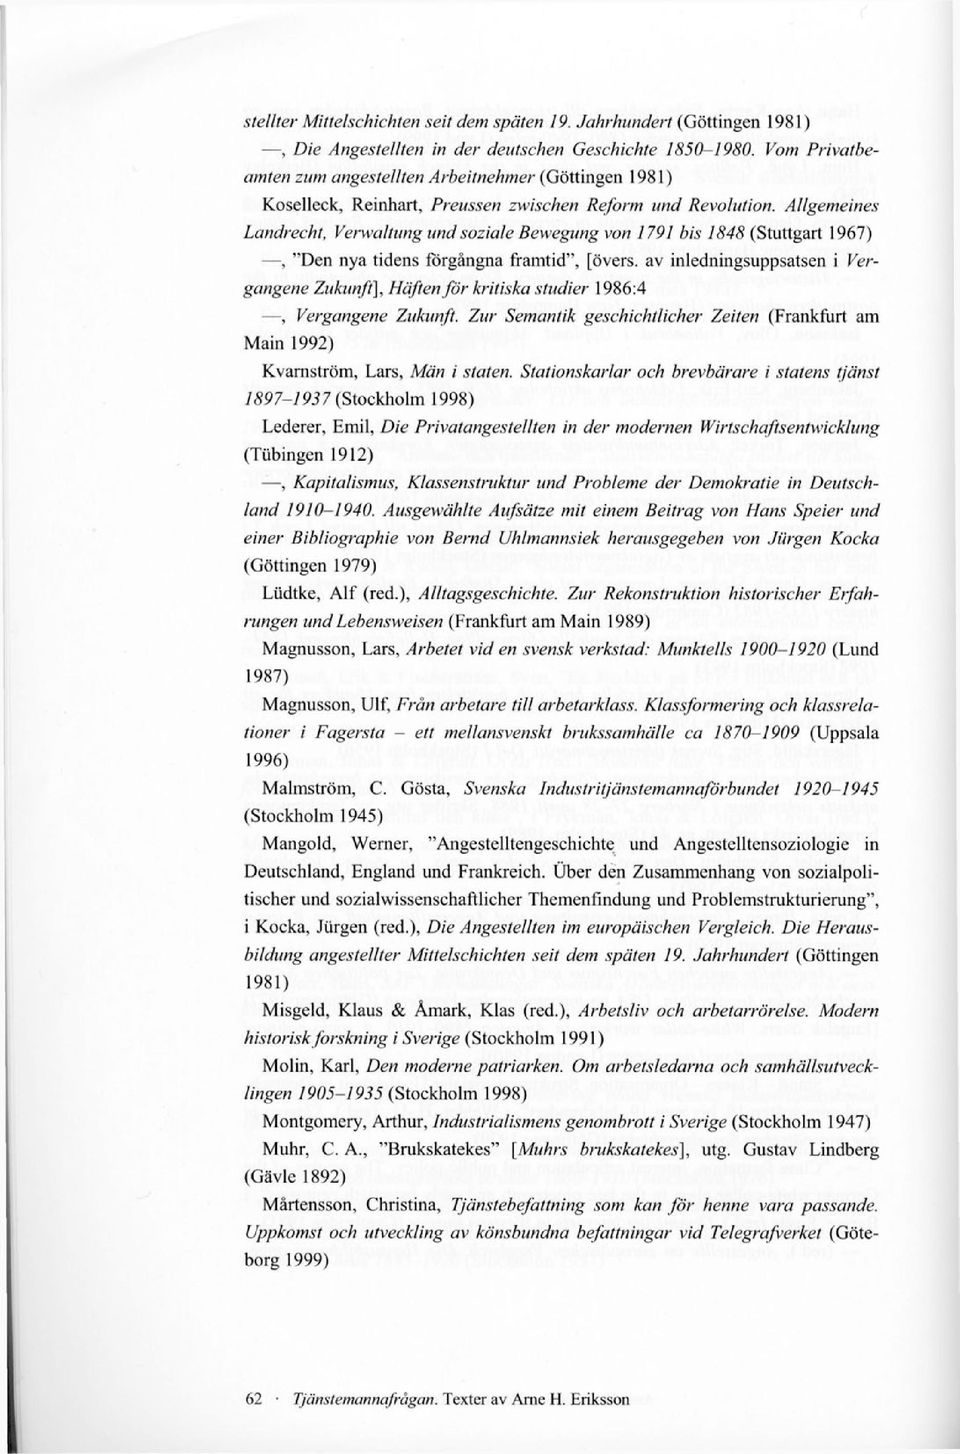 Allgemeines Landrecht, Verwaltung und soziale Bewegung von 1791 bis 1848 (Stuttgart 1967), "Den nya tidens förgångna framtid", [övers, av inledningsuppsatsen i Vergangene Zukunft], Häften för